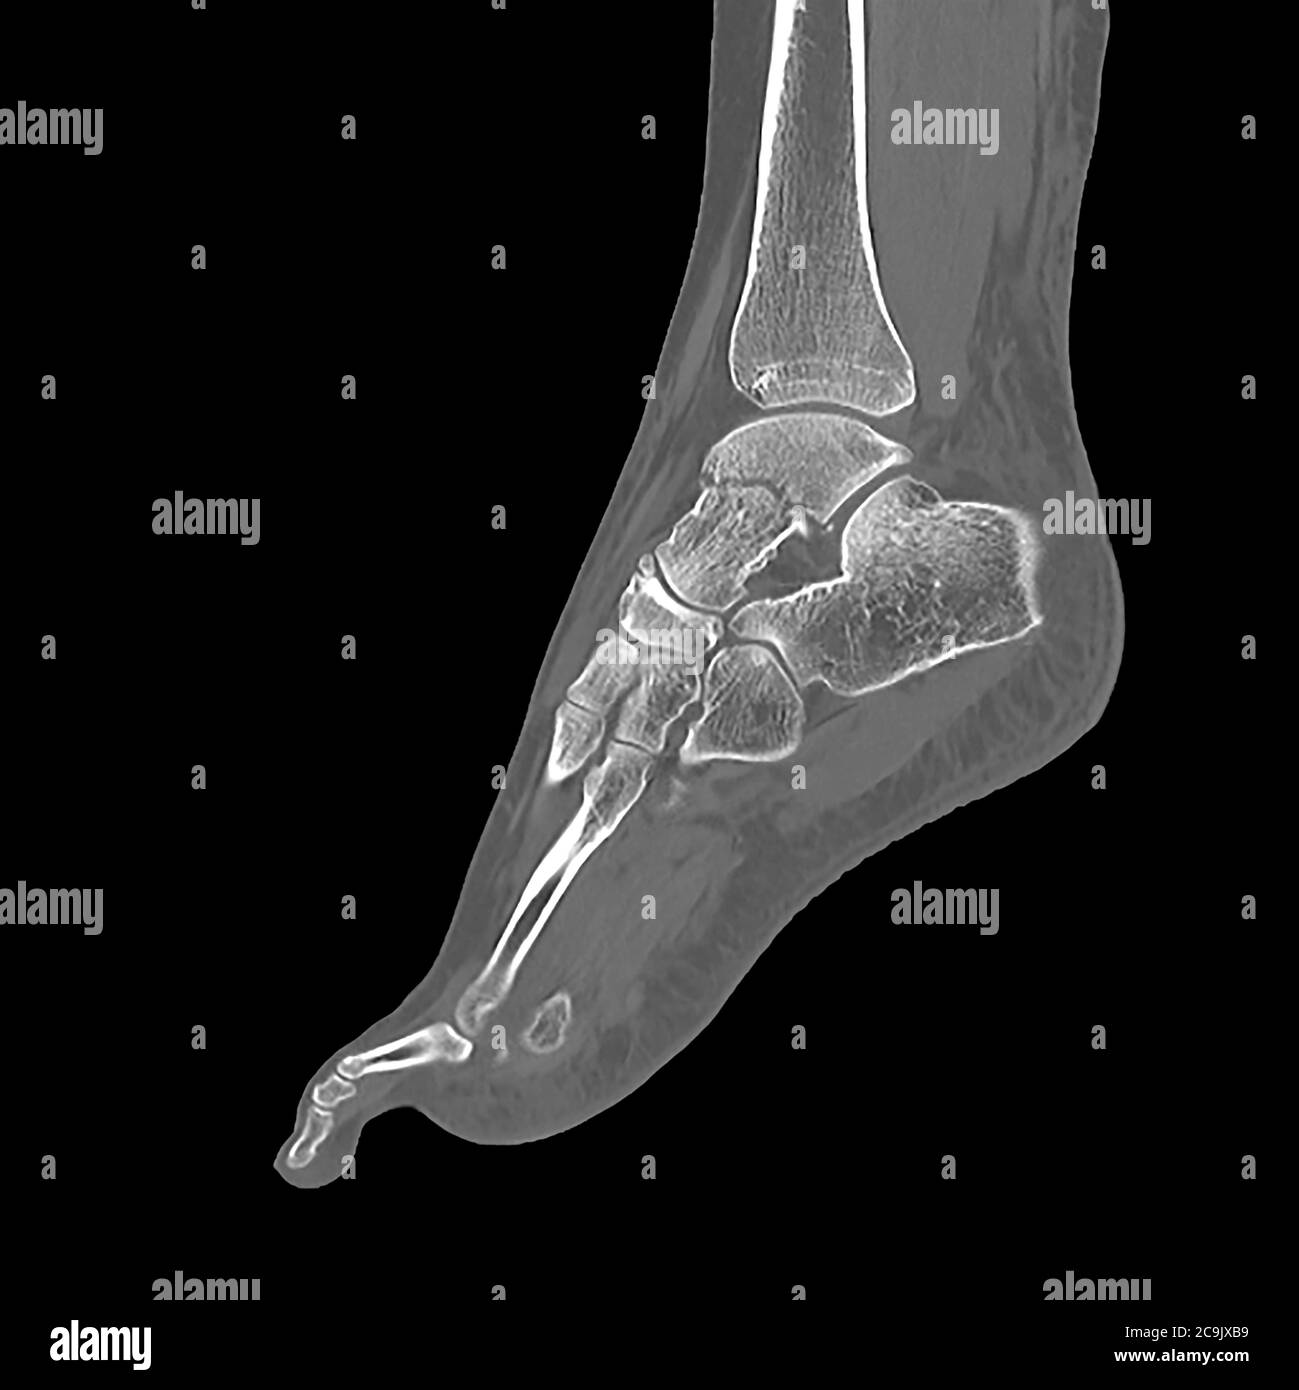 Fracture de l'os de la cheville. Tomodensitométrie (CT) des os du pied et de la cheville d'une femme de 23 ans présentant une fracture comminée (fracturée) Banque D'Images